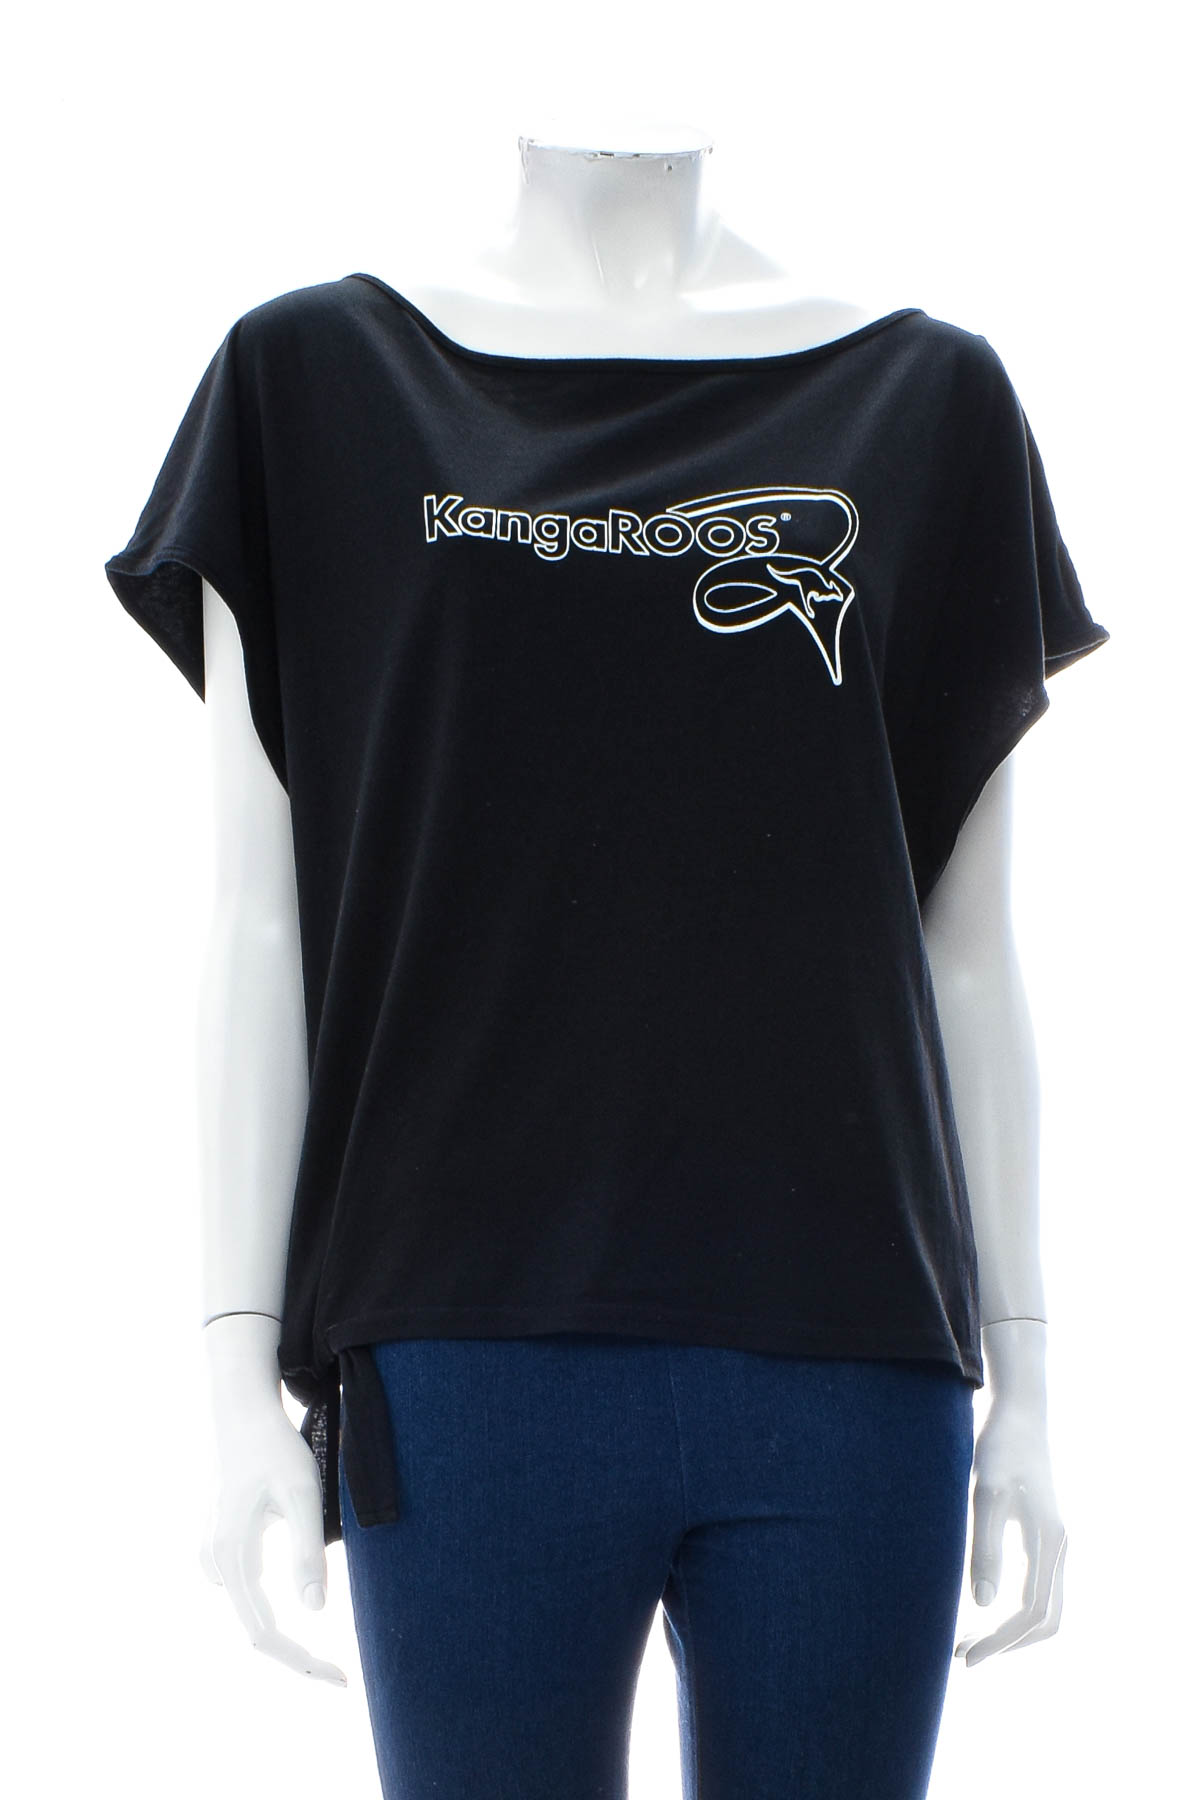 Γυναικεία μπλούζα - KangaROOS - 0